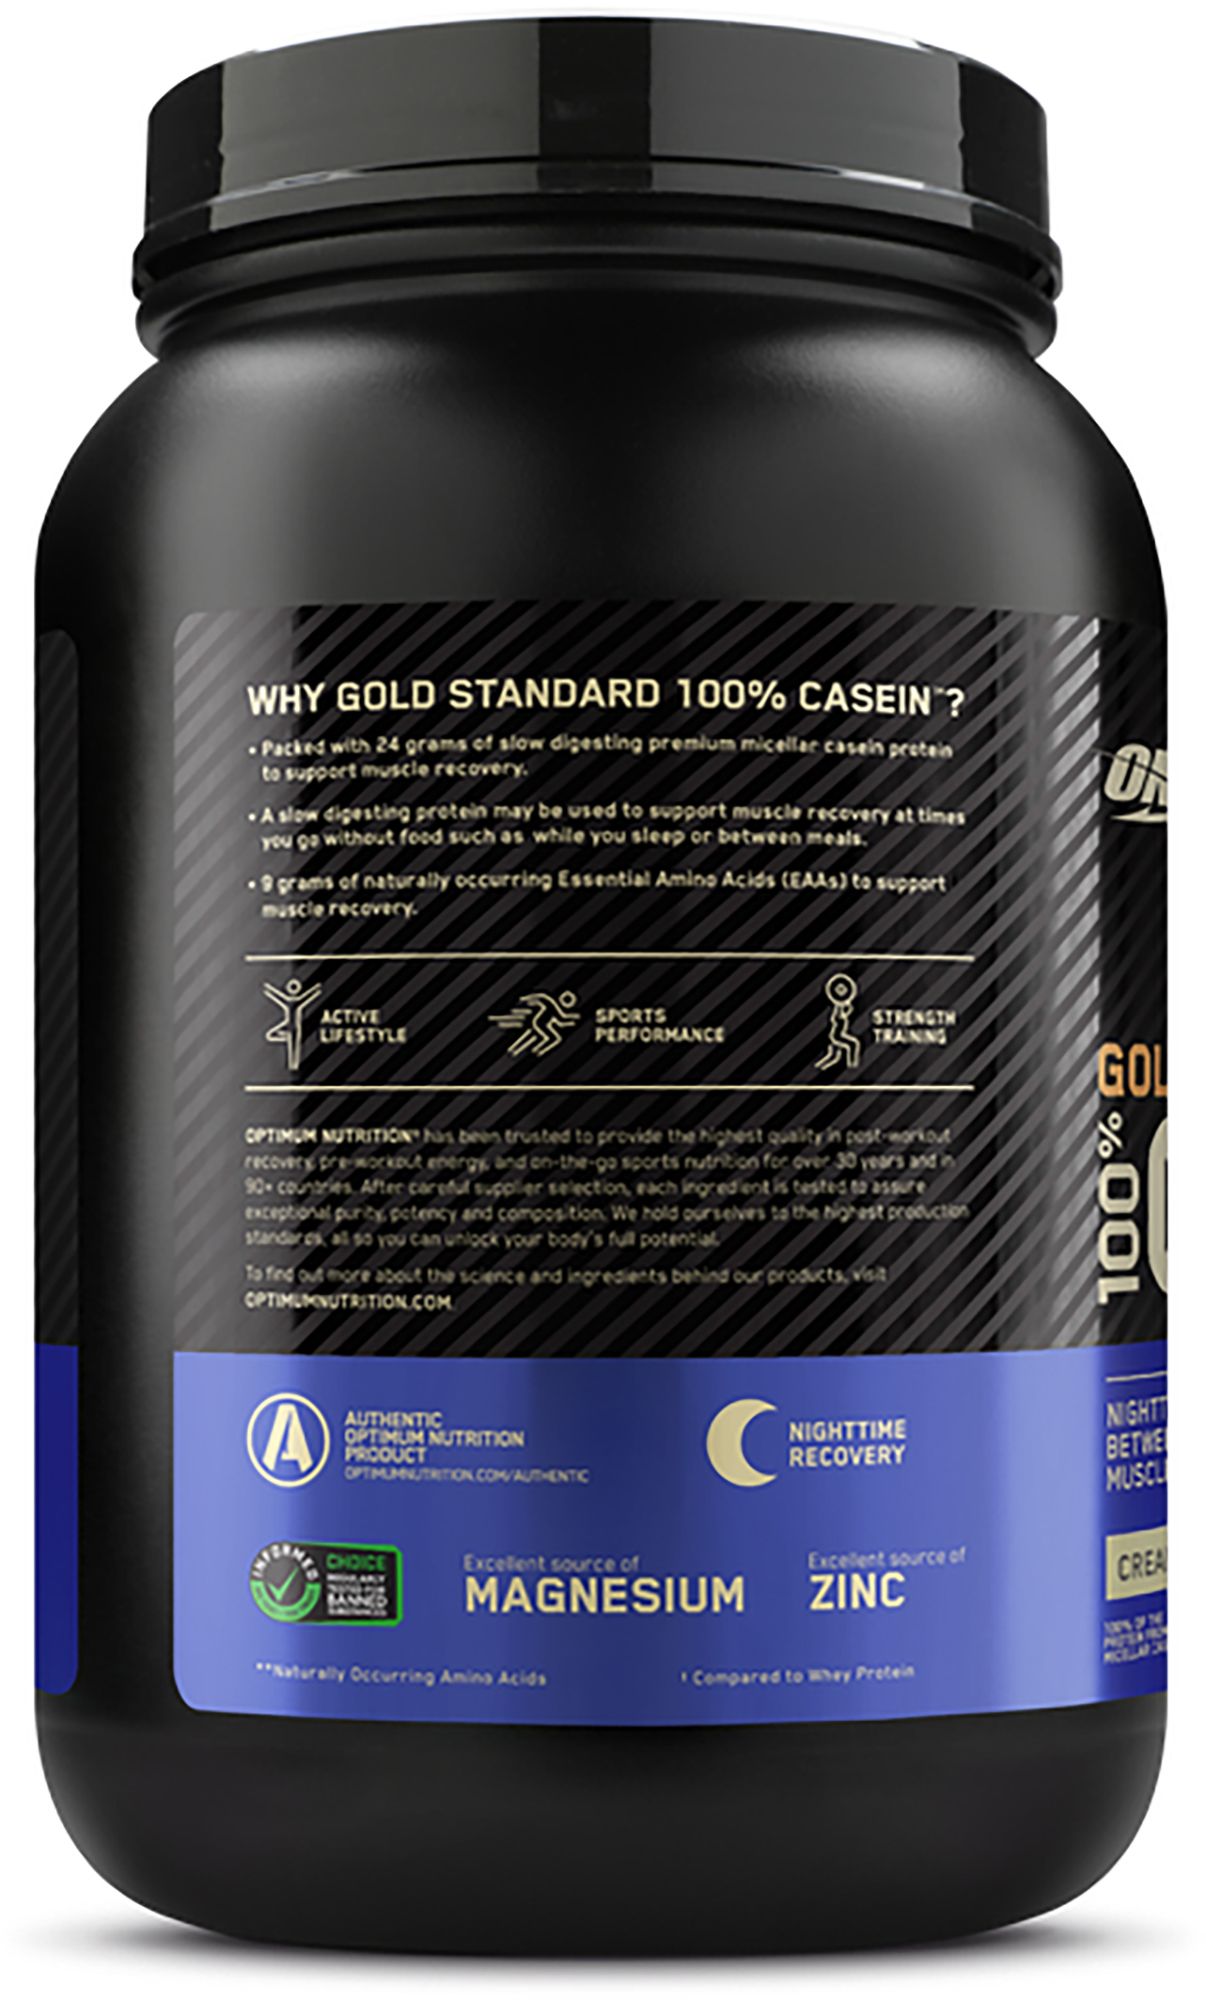 Optimum Nutrition Gold Standard 100% Casein Protein Powder 26 Servings